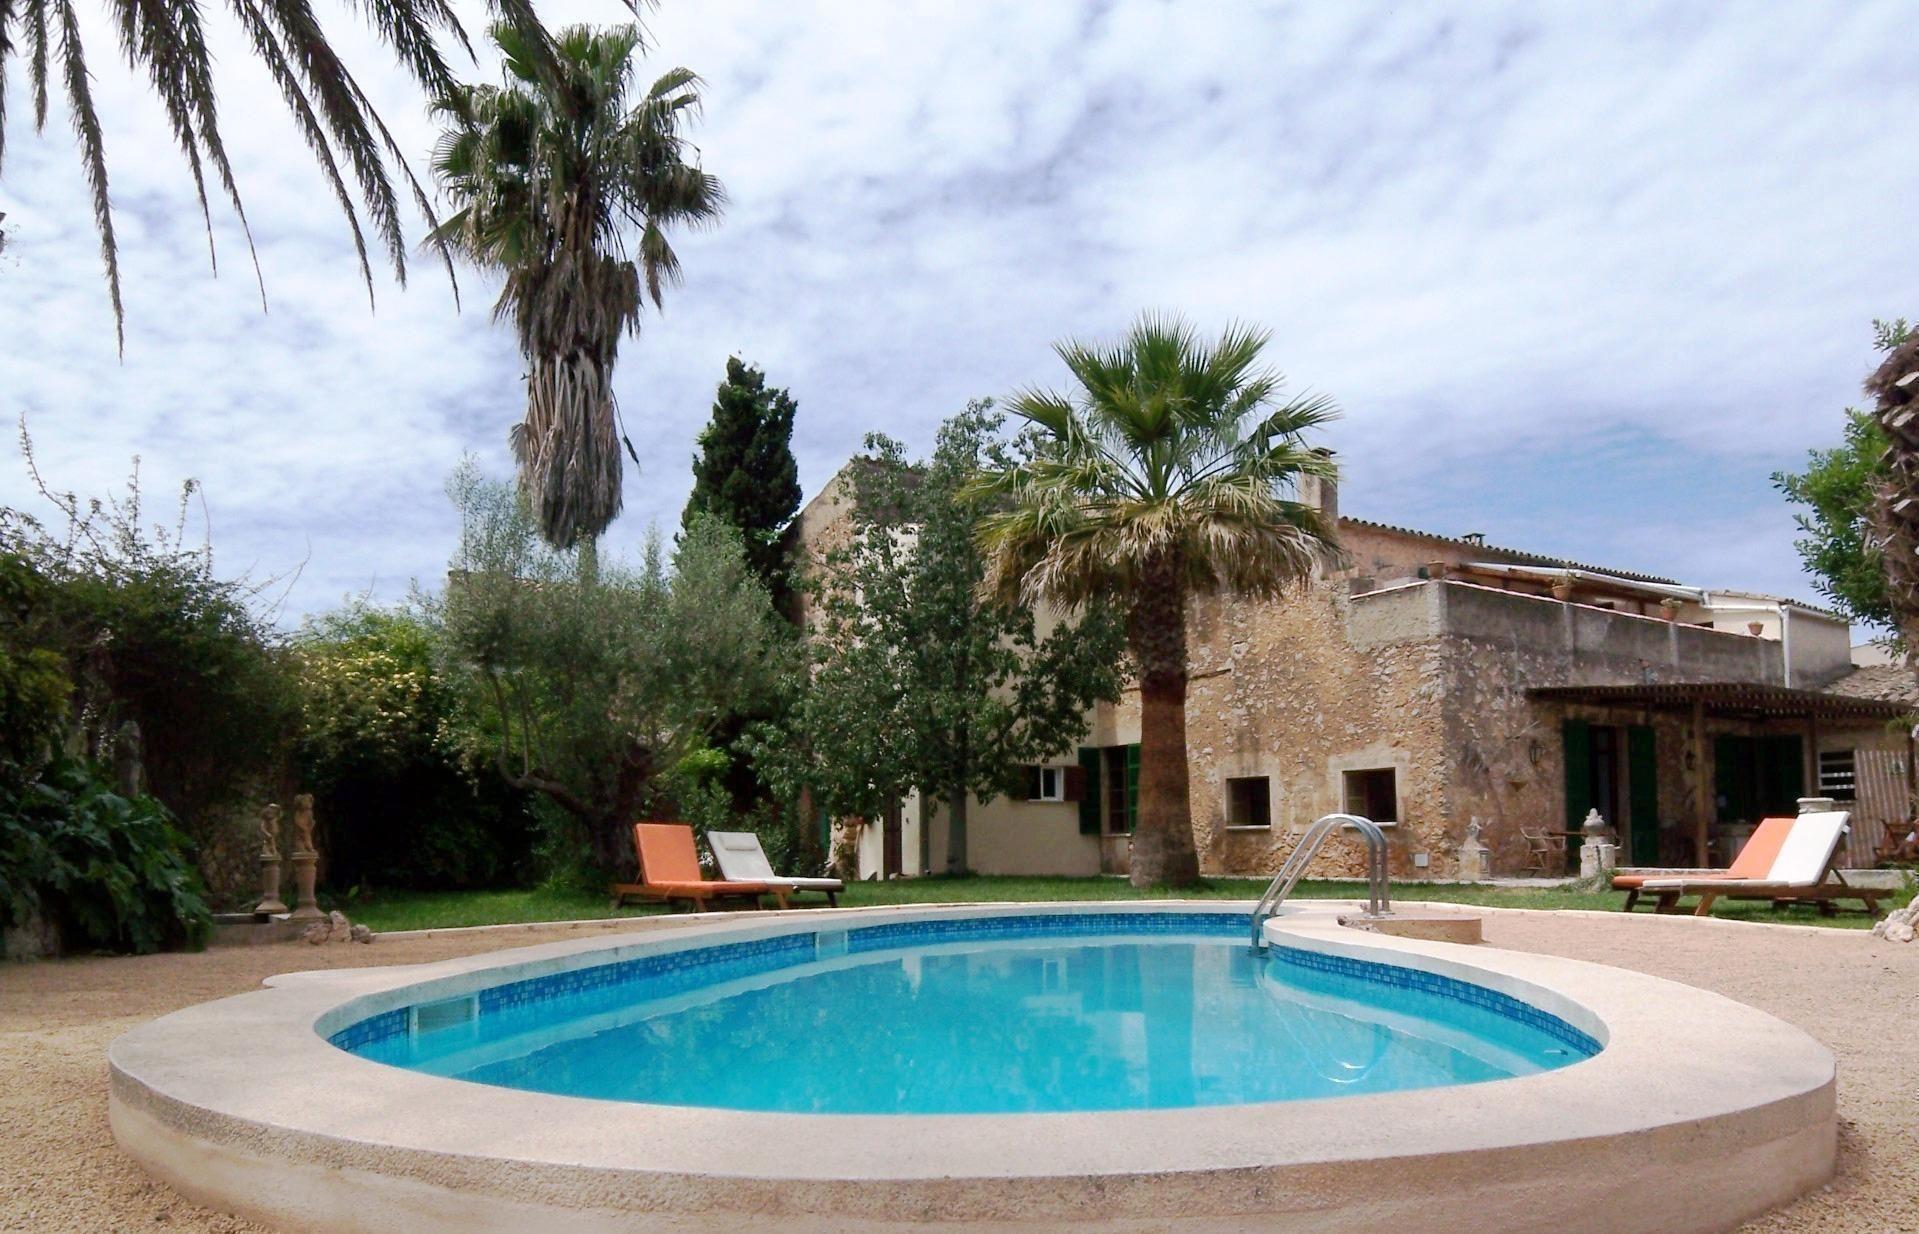 Ferienwohnung für 4 Personen ca. 135 m²    Mallorca